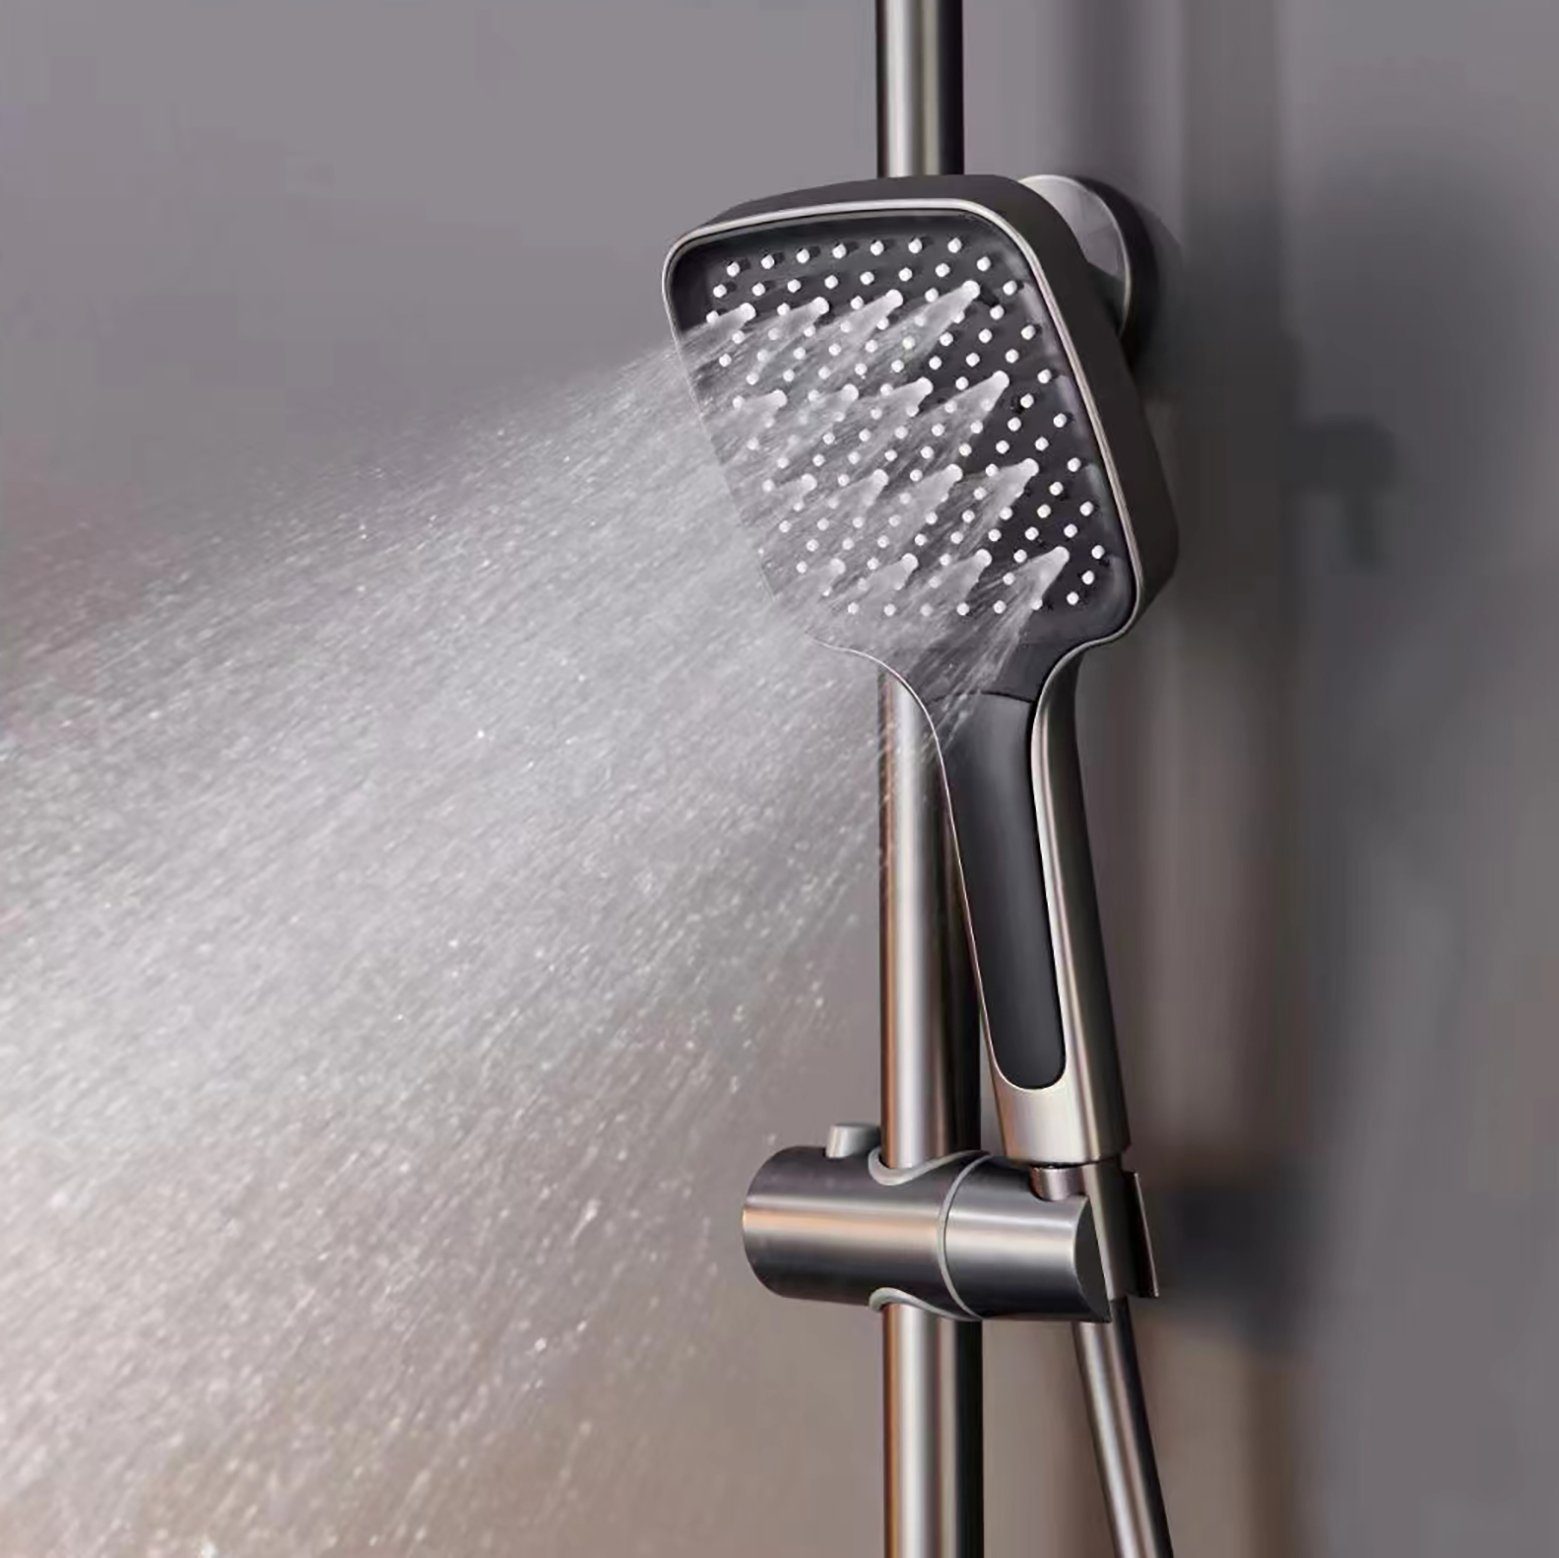 Handbrause schlauch duschkopf Verbrühungsschutz gross), druckerhöhend duschkopf (duschschlauch Sumerain duschkopf, mit duschbrause 150cm, mit